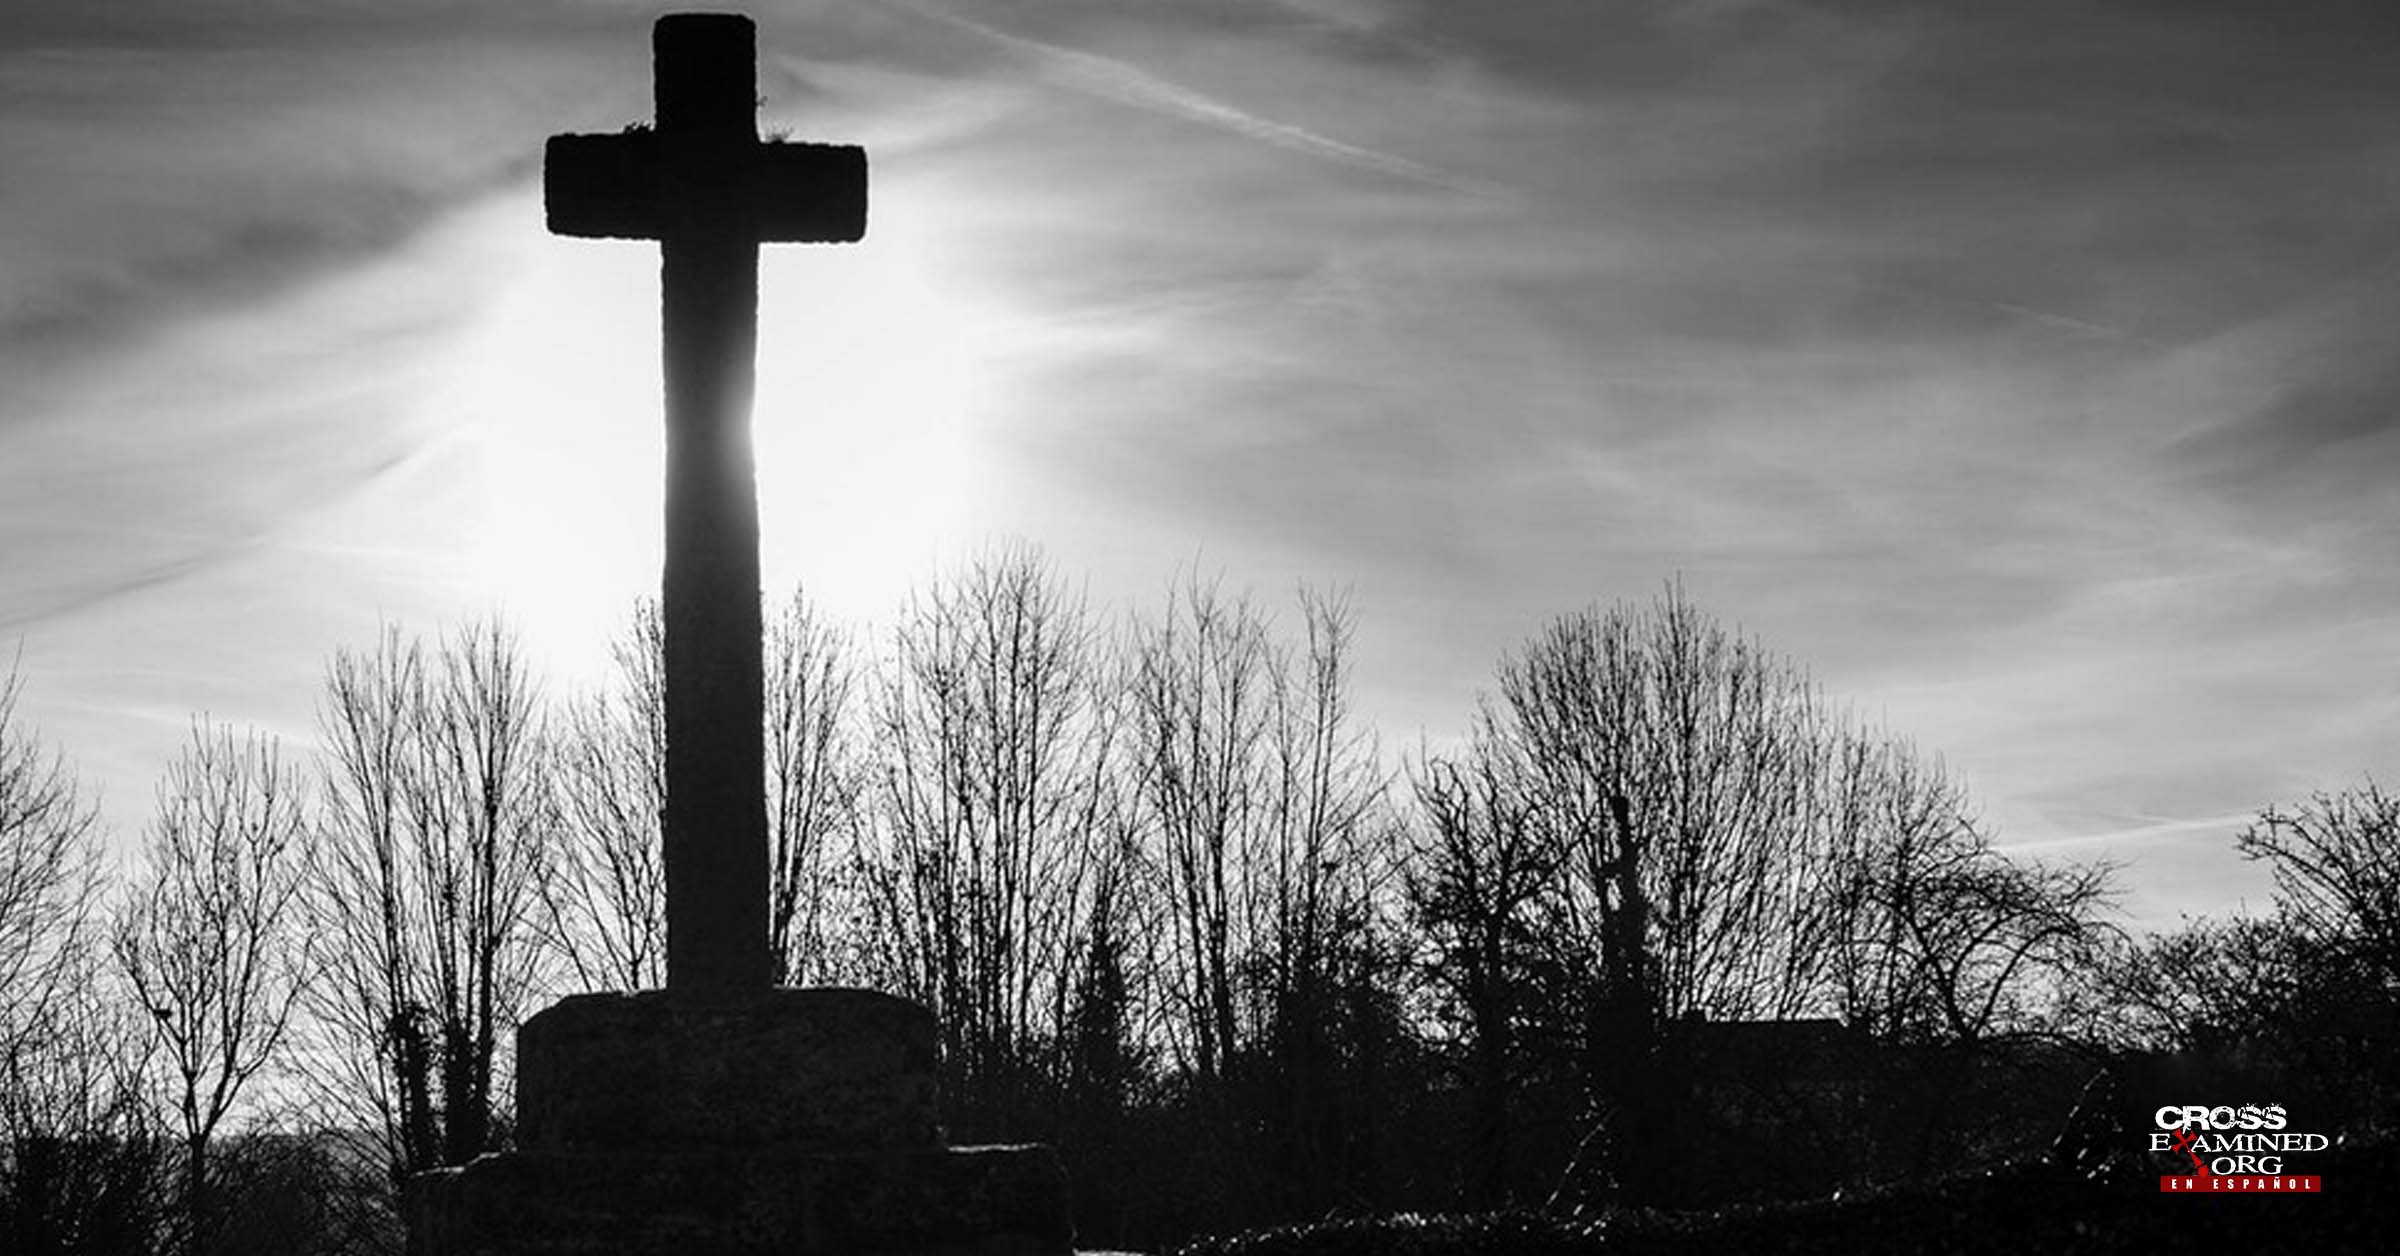 El decaimiento del cristianismo y de la razonabilidad en occidente